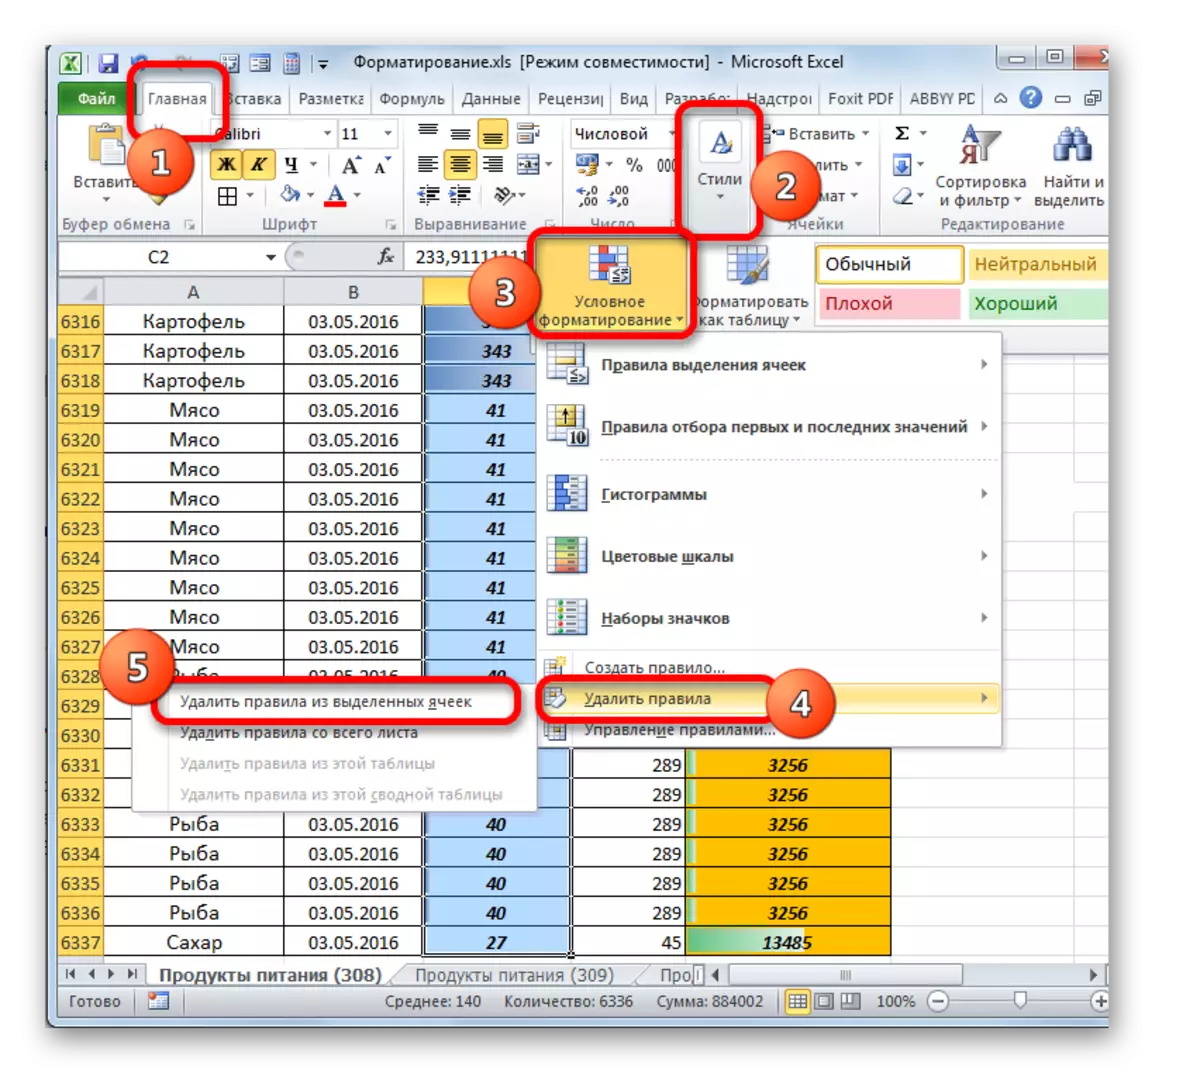 إزالة قواعد التنسيق الشرطي من الخلايا المحددة في Microsoft Excel